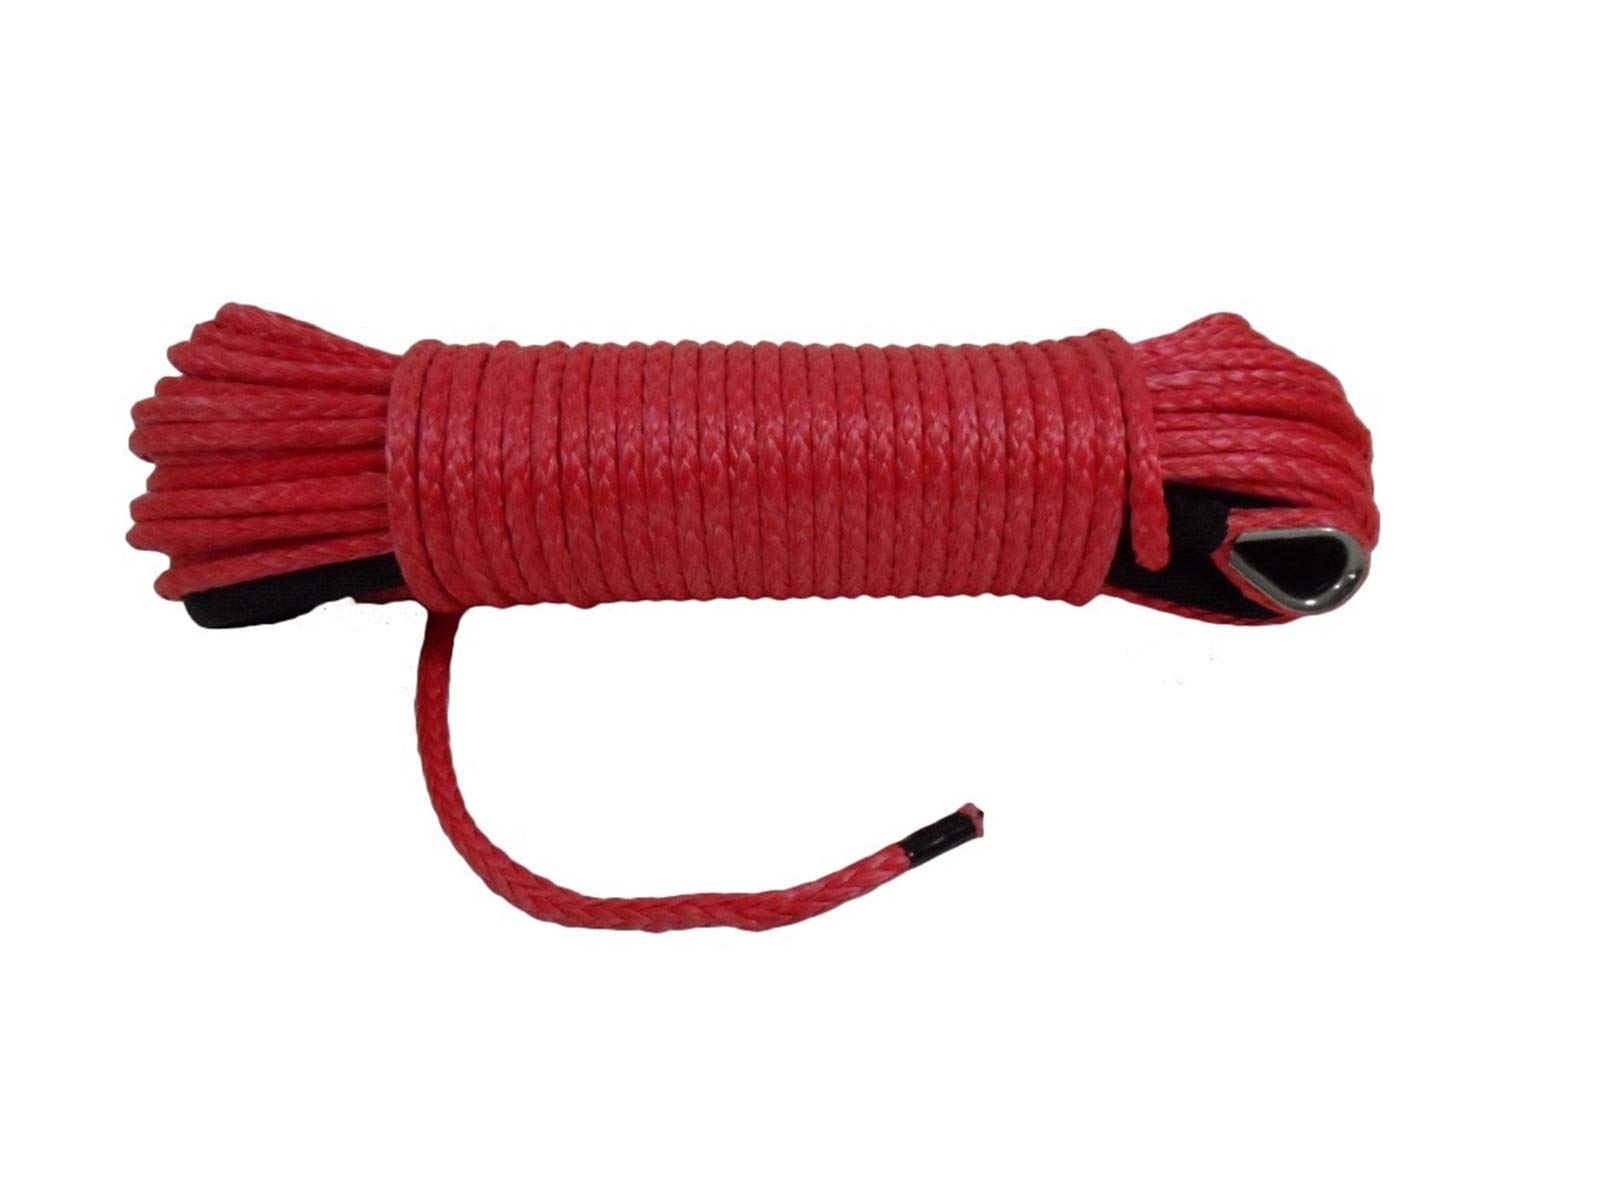 Windenkabel Rot 6mm * 15m Synthetisches Seil, Off Road Seil, ATV Winch Line, Bootswinde Seil 6mm, Winklabel Großartiges Aussehen und Kompatibilität von MERHOVO